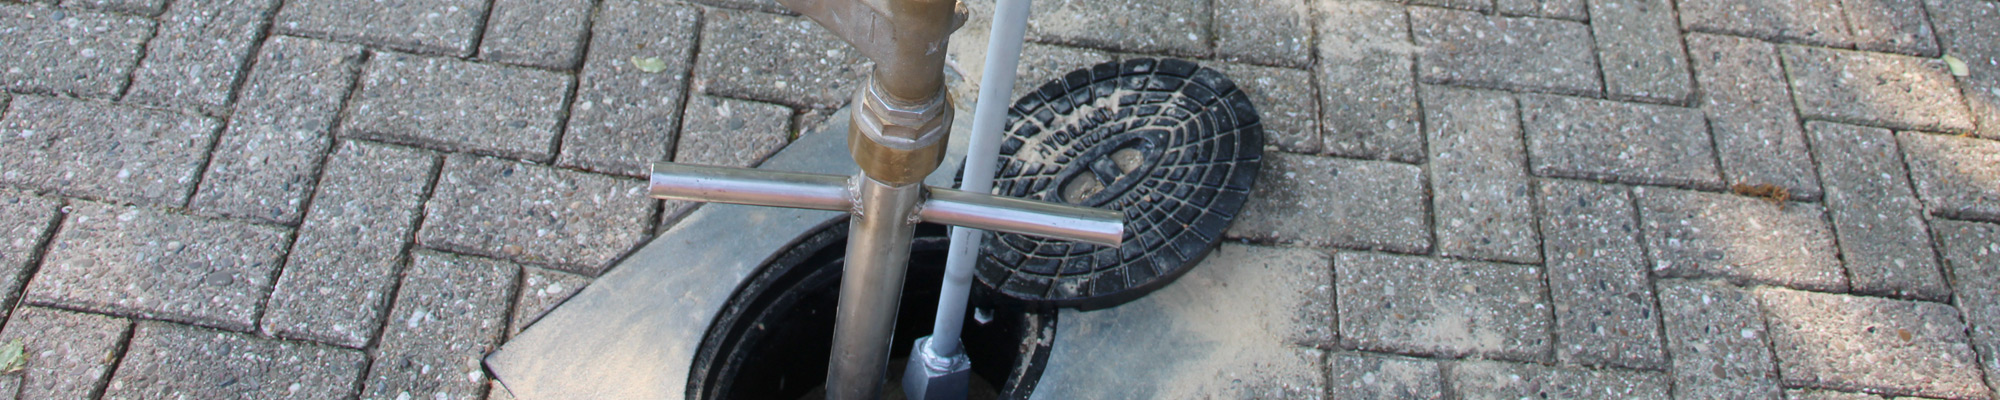 Geöffneter Hydranten-Deckel im Verbundsteinpflaster mit eingesetztem Standrohr.